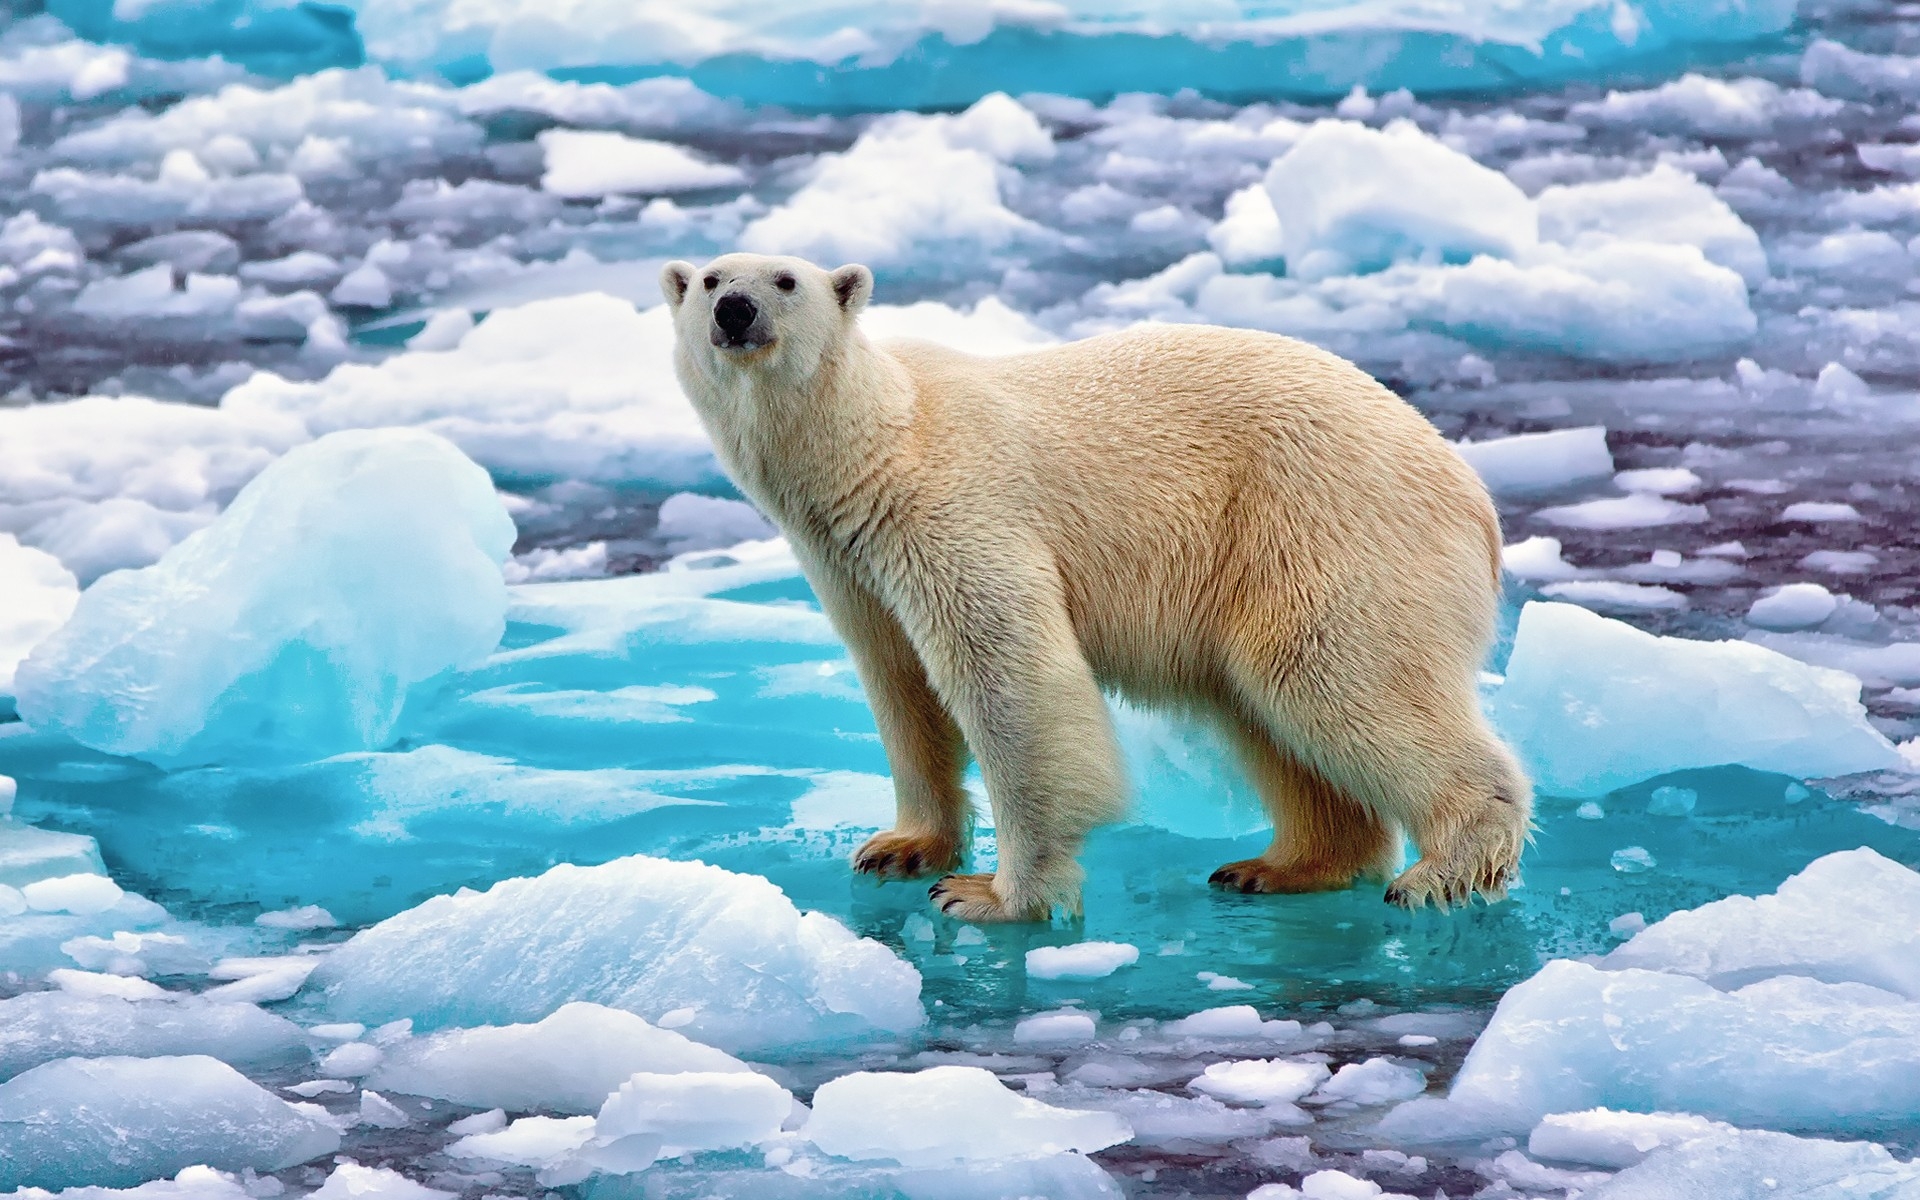 Baixe gratuitamente a imagem Animais, Urso, Urso Polar, Ursos na área de trabalho do seu PC